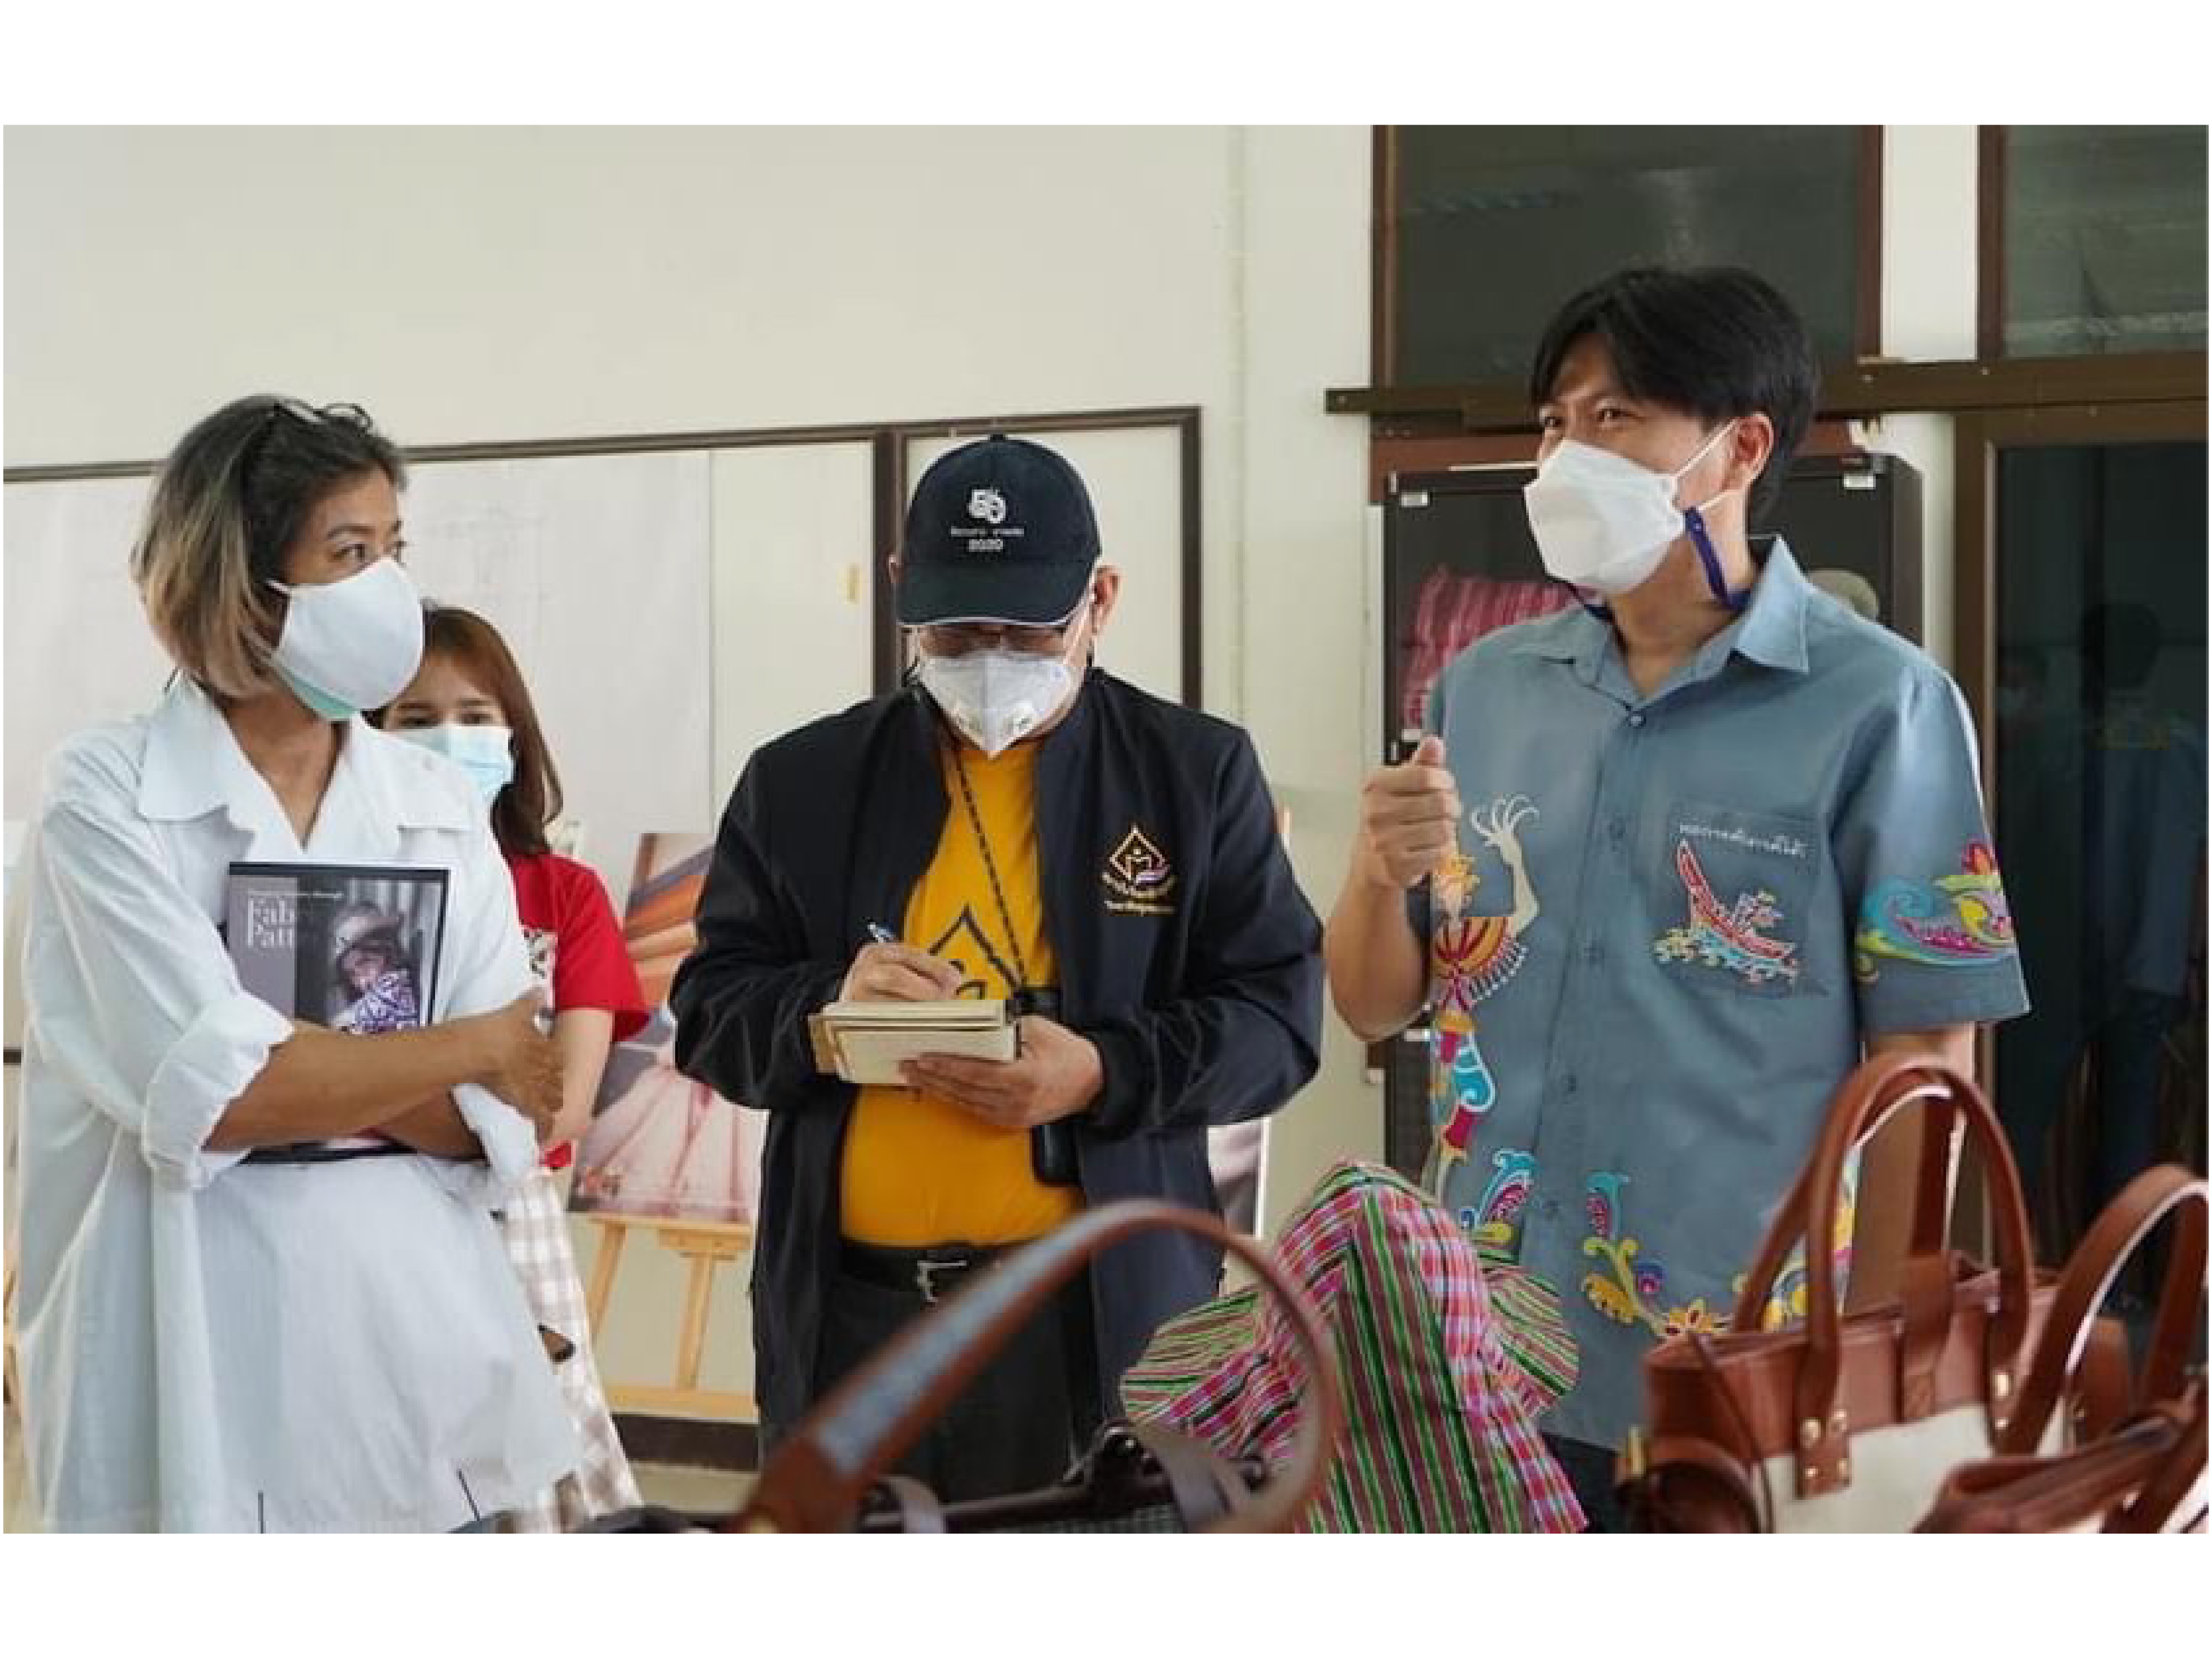 โครงการผ้าขาวม้าท้องถิ่นหัตถศิลป์ไทย ร่วมกับ eisa นำนักศึกษา ม.ธรรมศาสตร์ ลงพื้นที่กลุ่มอาชีพทอผ้าบ้านล่องมุด จ.สงขลา